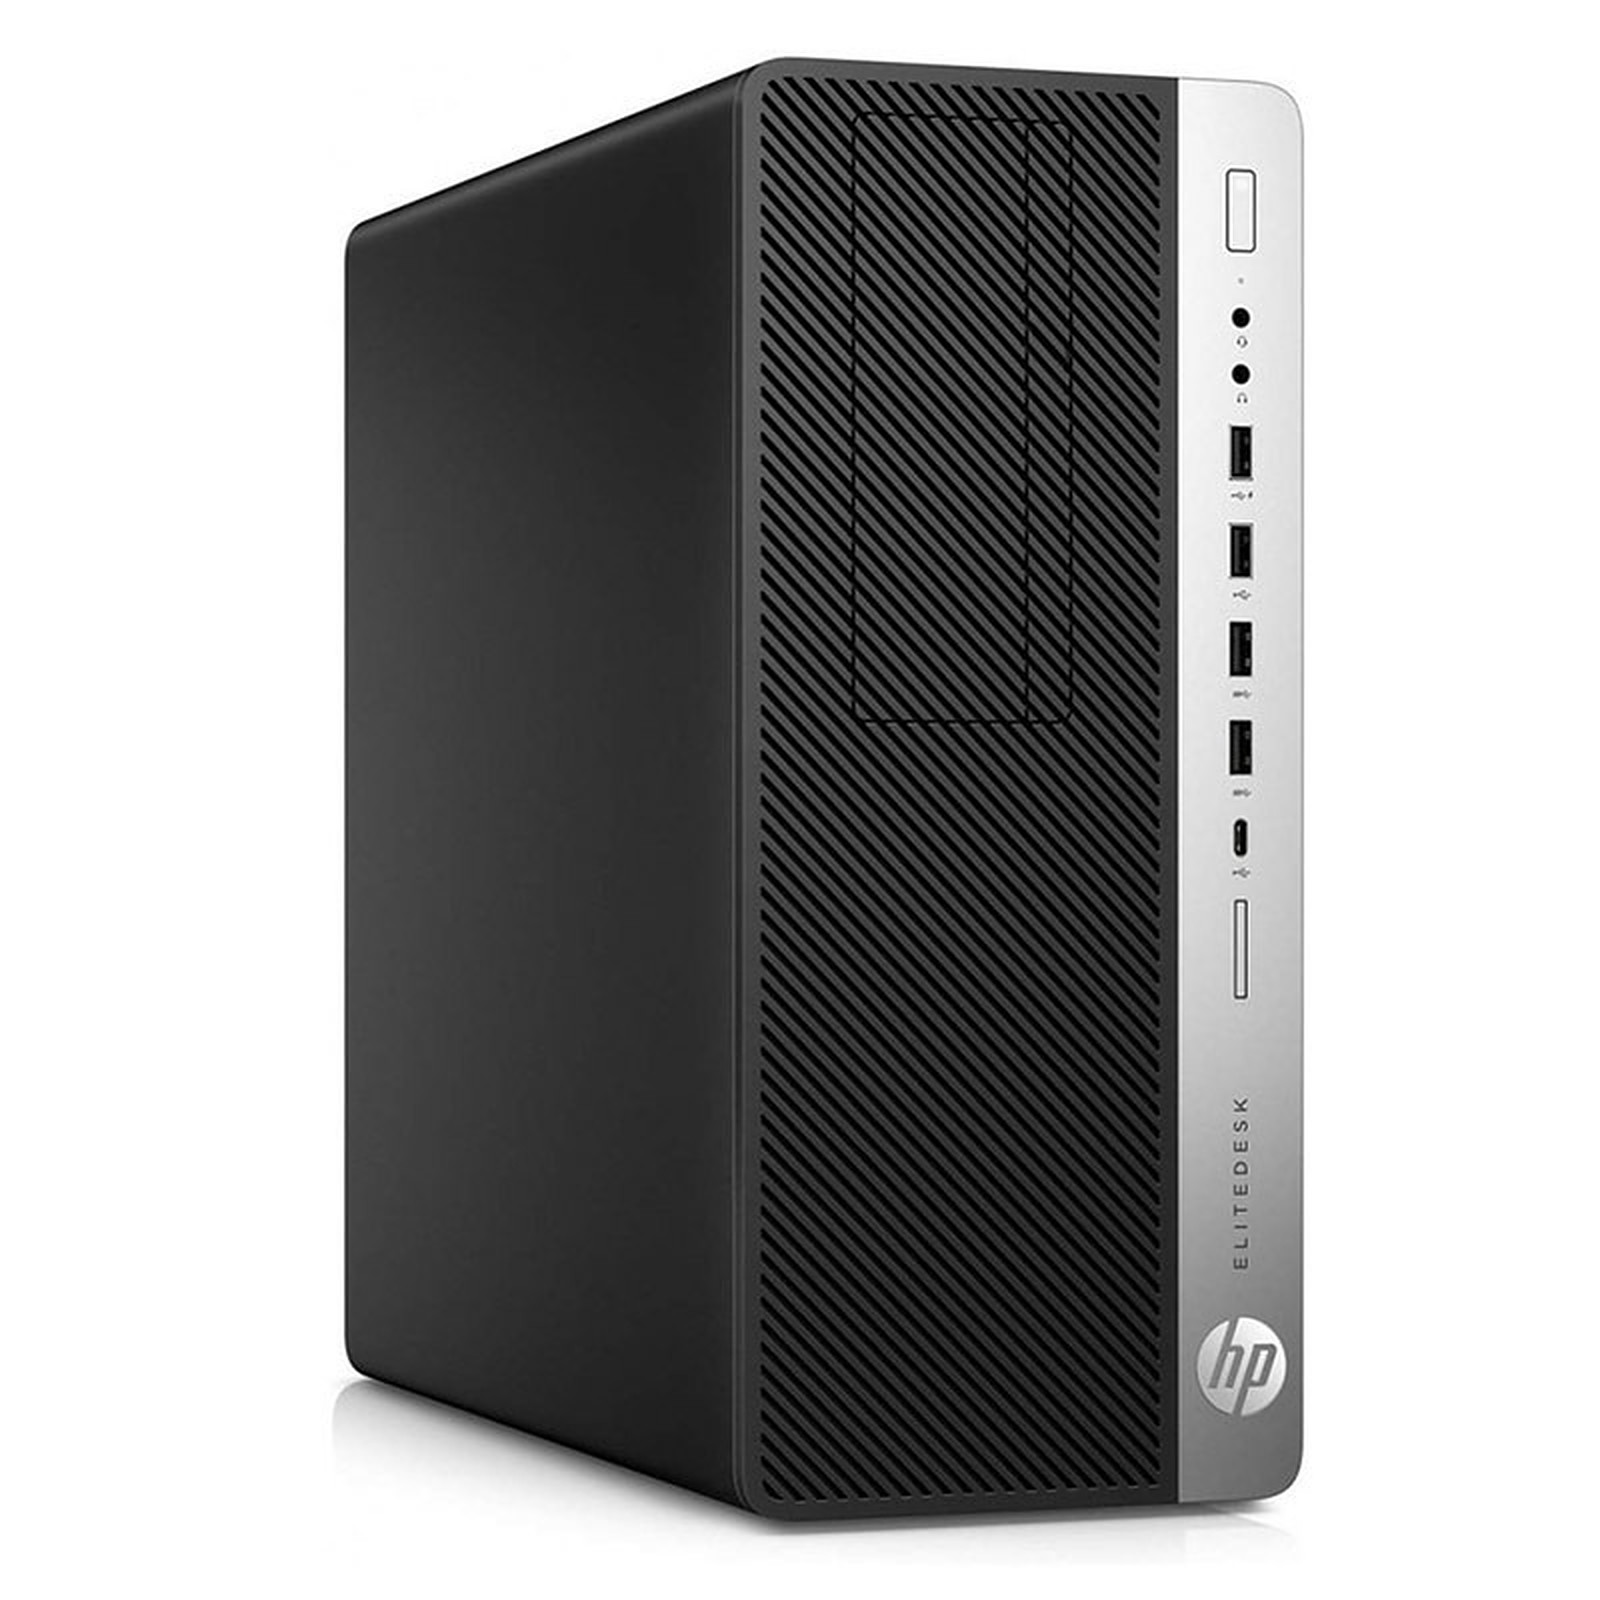 HP LPG-800G3 (I56582S) · Reconditionne - PC de bureau reconditionne HP